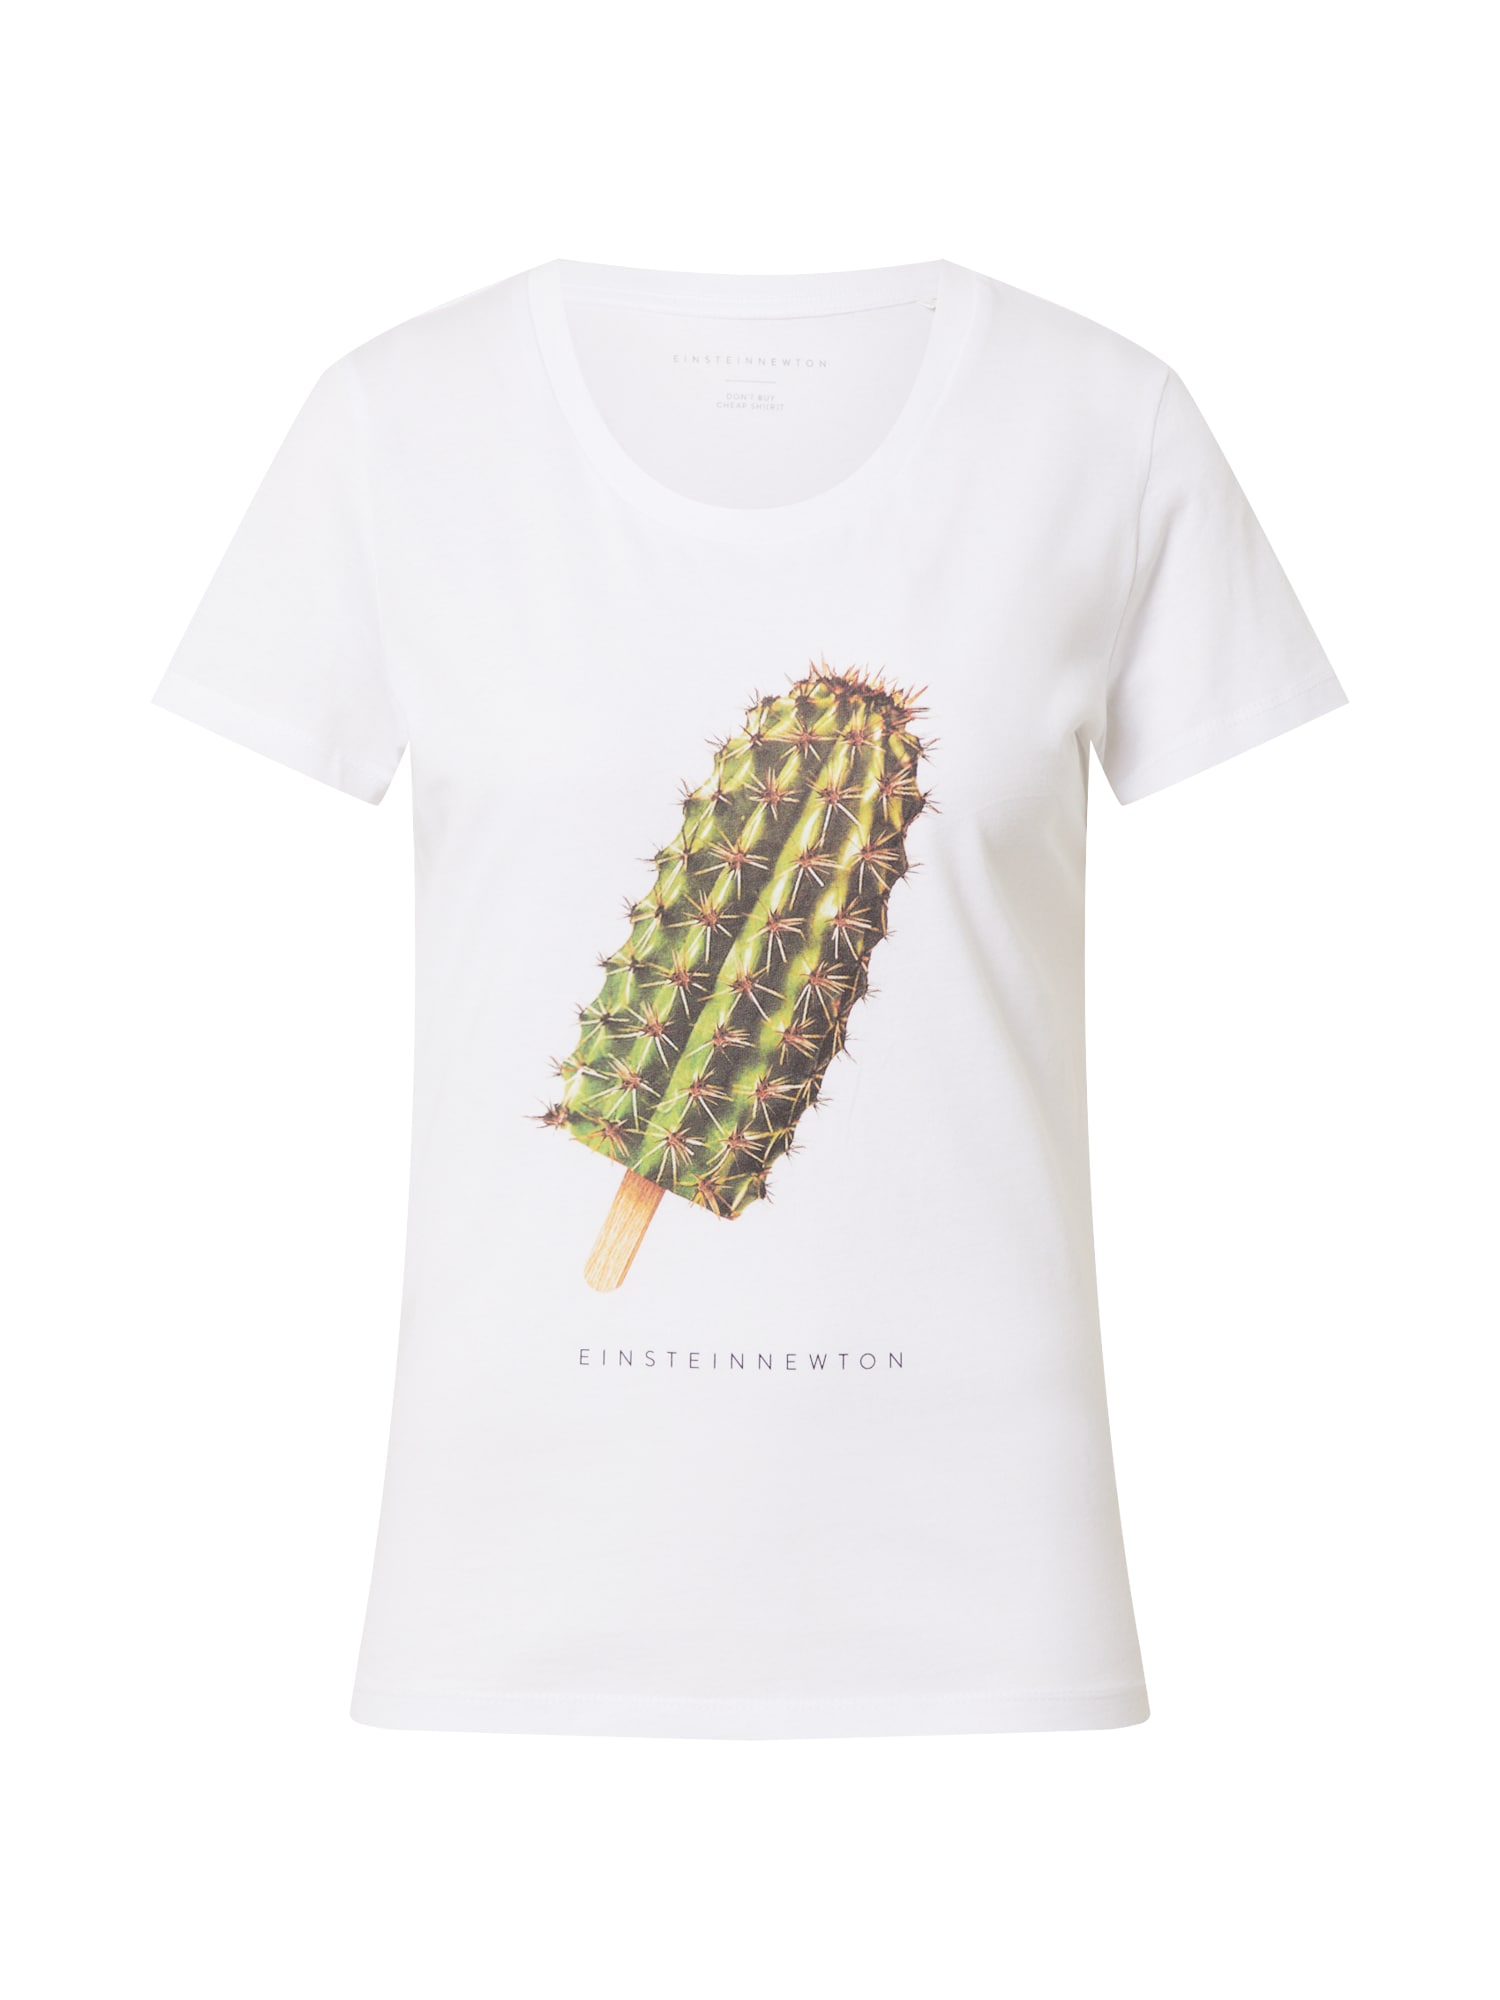 EINSTEIN & NEWTON Marškinėliai 'Cactus Ice' mišrios spalvos / balta